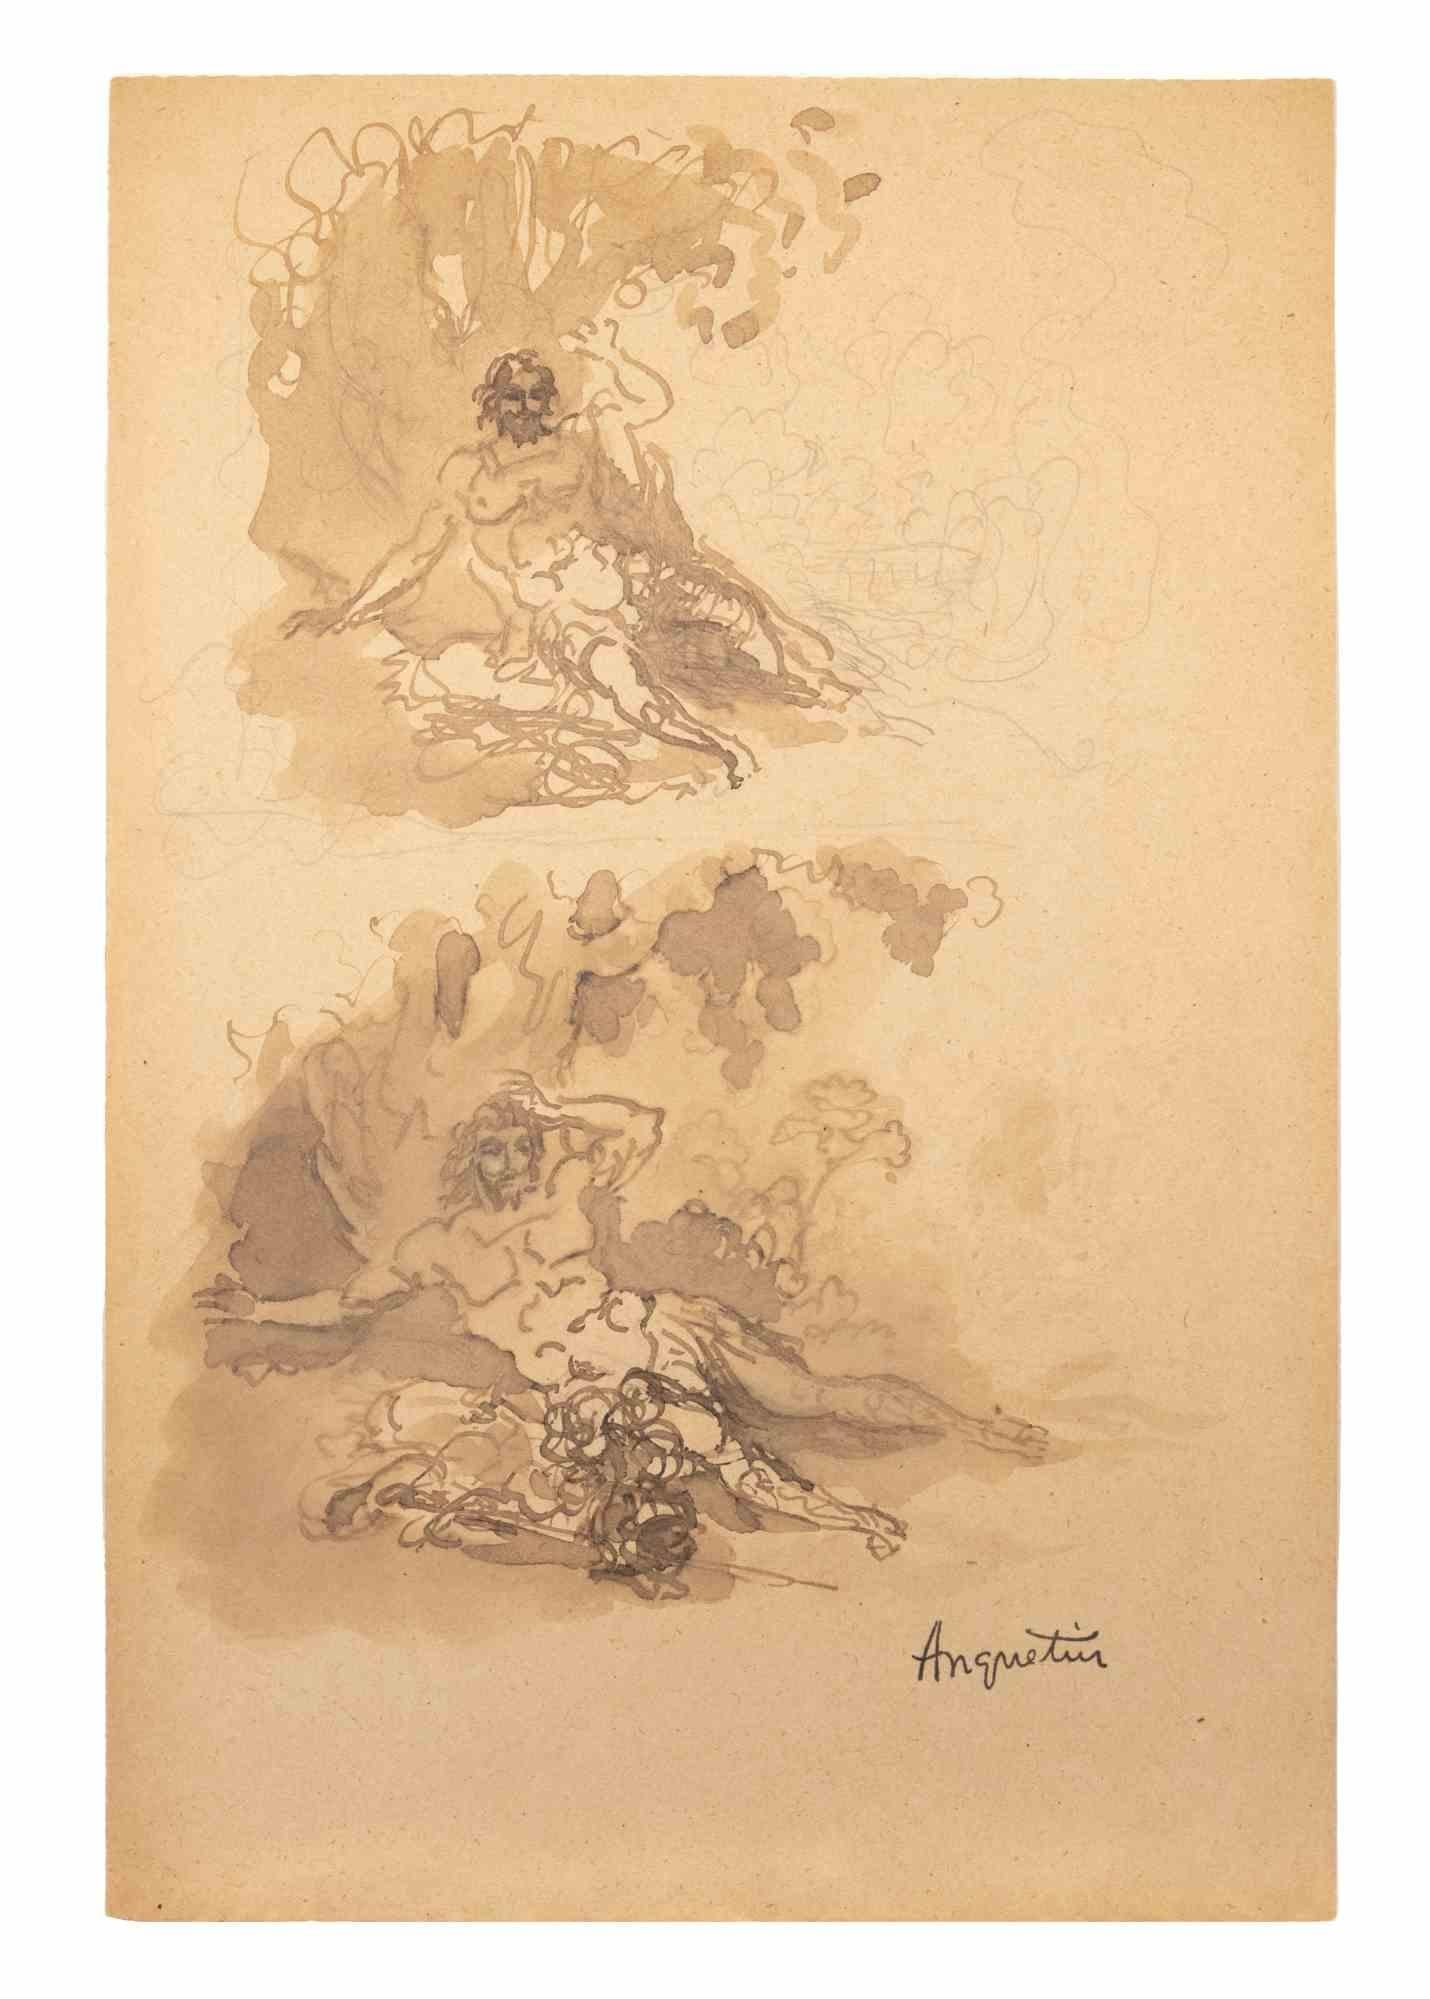 Nudes ist eine Tusche- und Bleistiftzeichnung auf Papier, die Anfang des 20. Jahrhunderts von Louis Anquetin (1861-1932) angefertigt wurde.

Handsigniert auf der Unterseite.

Guter Zustand.

Louis Émile Anquetin (26. Januar 1861 - 19. August 1932)